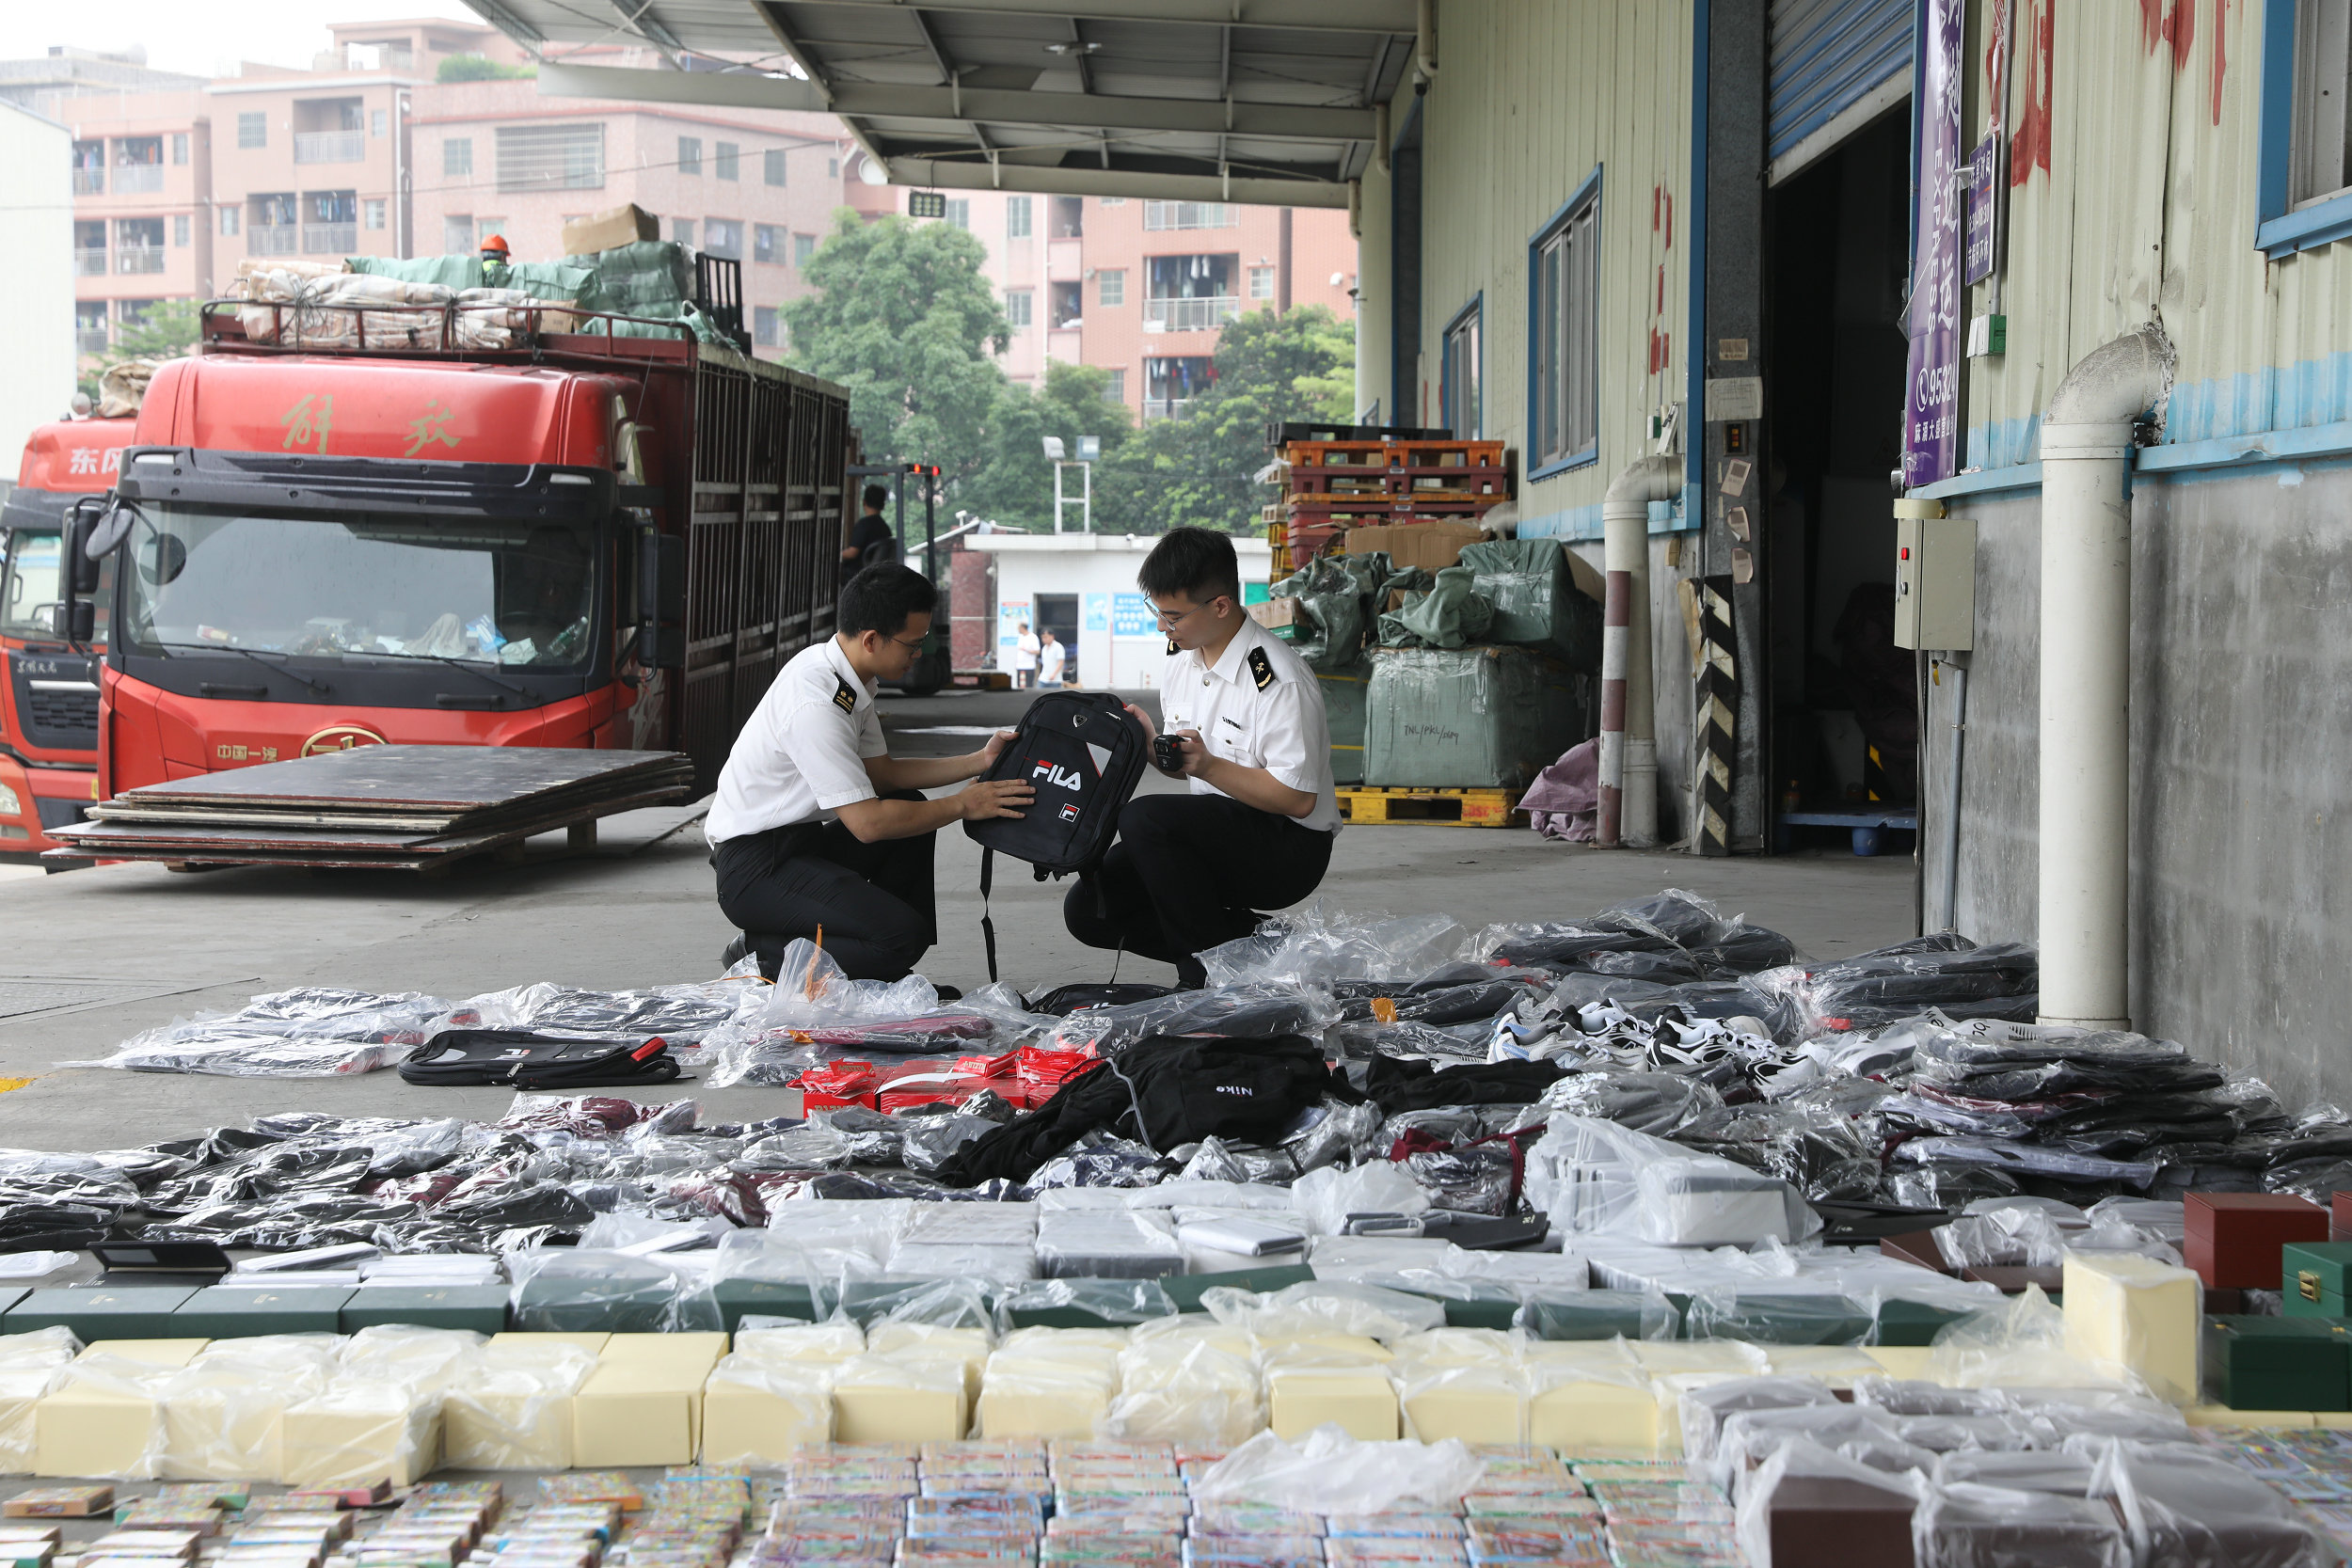 廣州海關集中銷毀82萬件侵犯知識產權商品